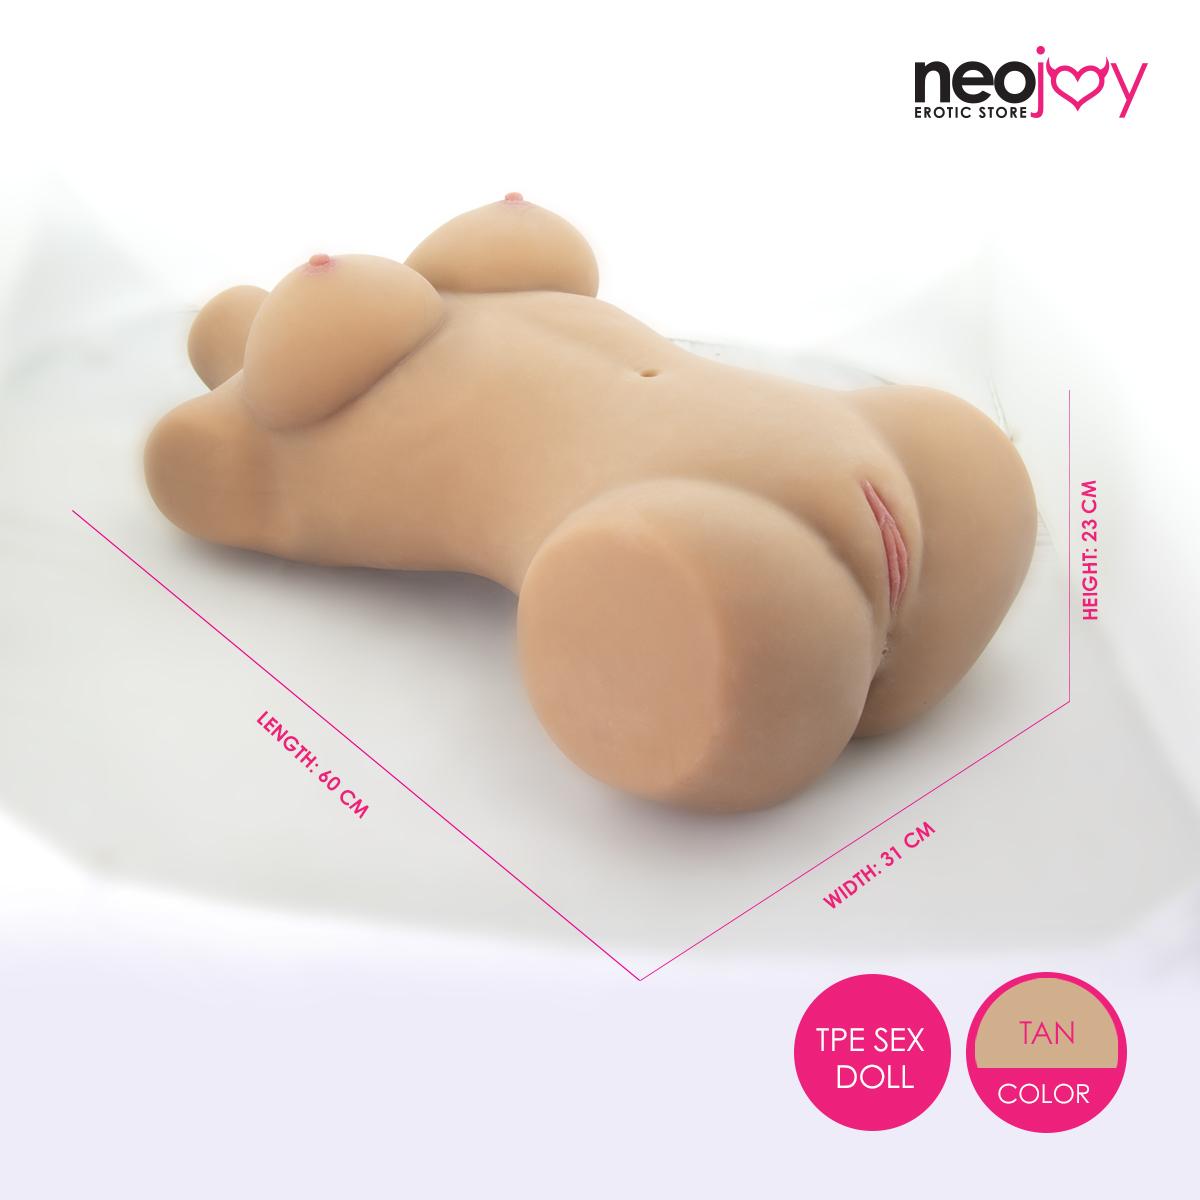 Neojoy Easy Torso - Realistic Sex Doll Torso With Head Connector - Tan - 14kg